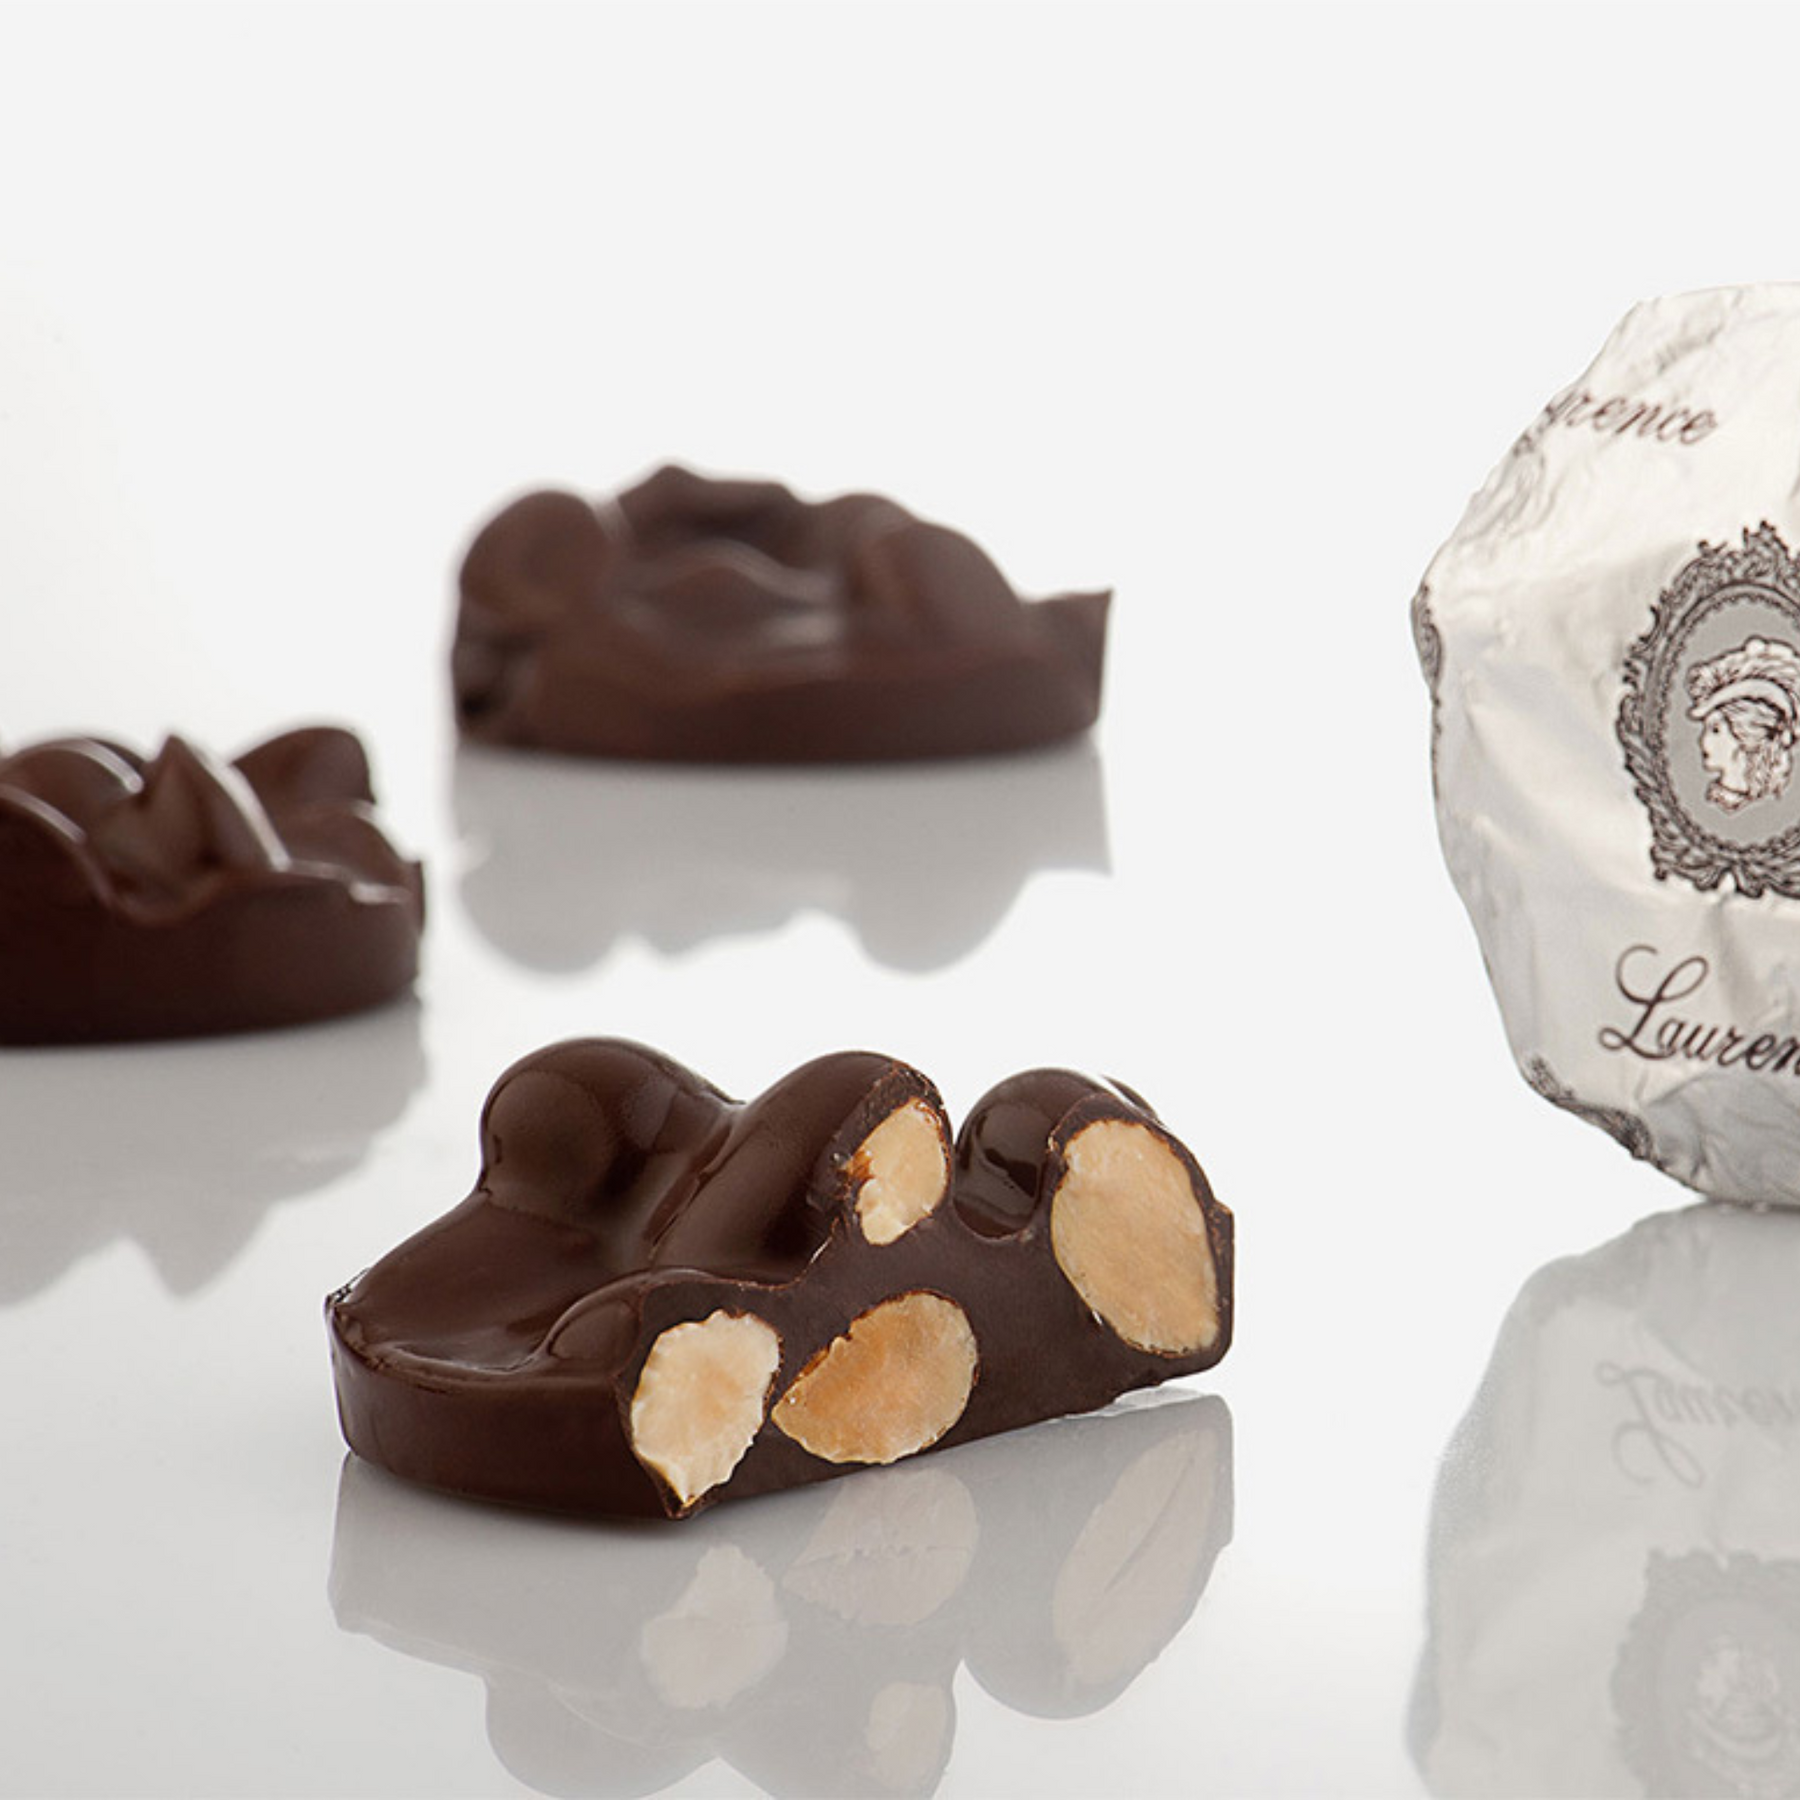 Цукерки з чорного шоколаду з мигдалем/Laurence Anomalo dark chocolate with almonds, 3 шт (≈100 г)